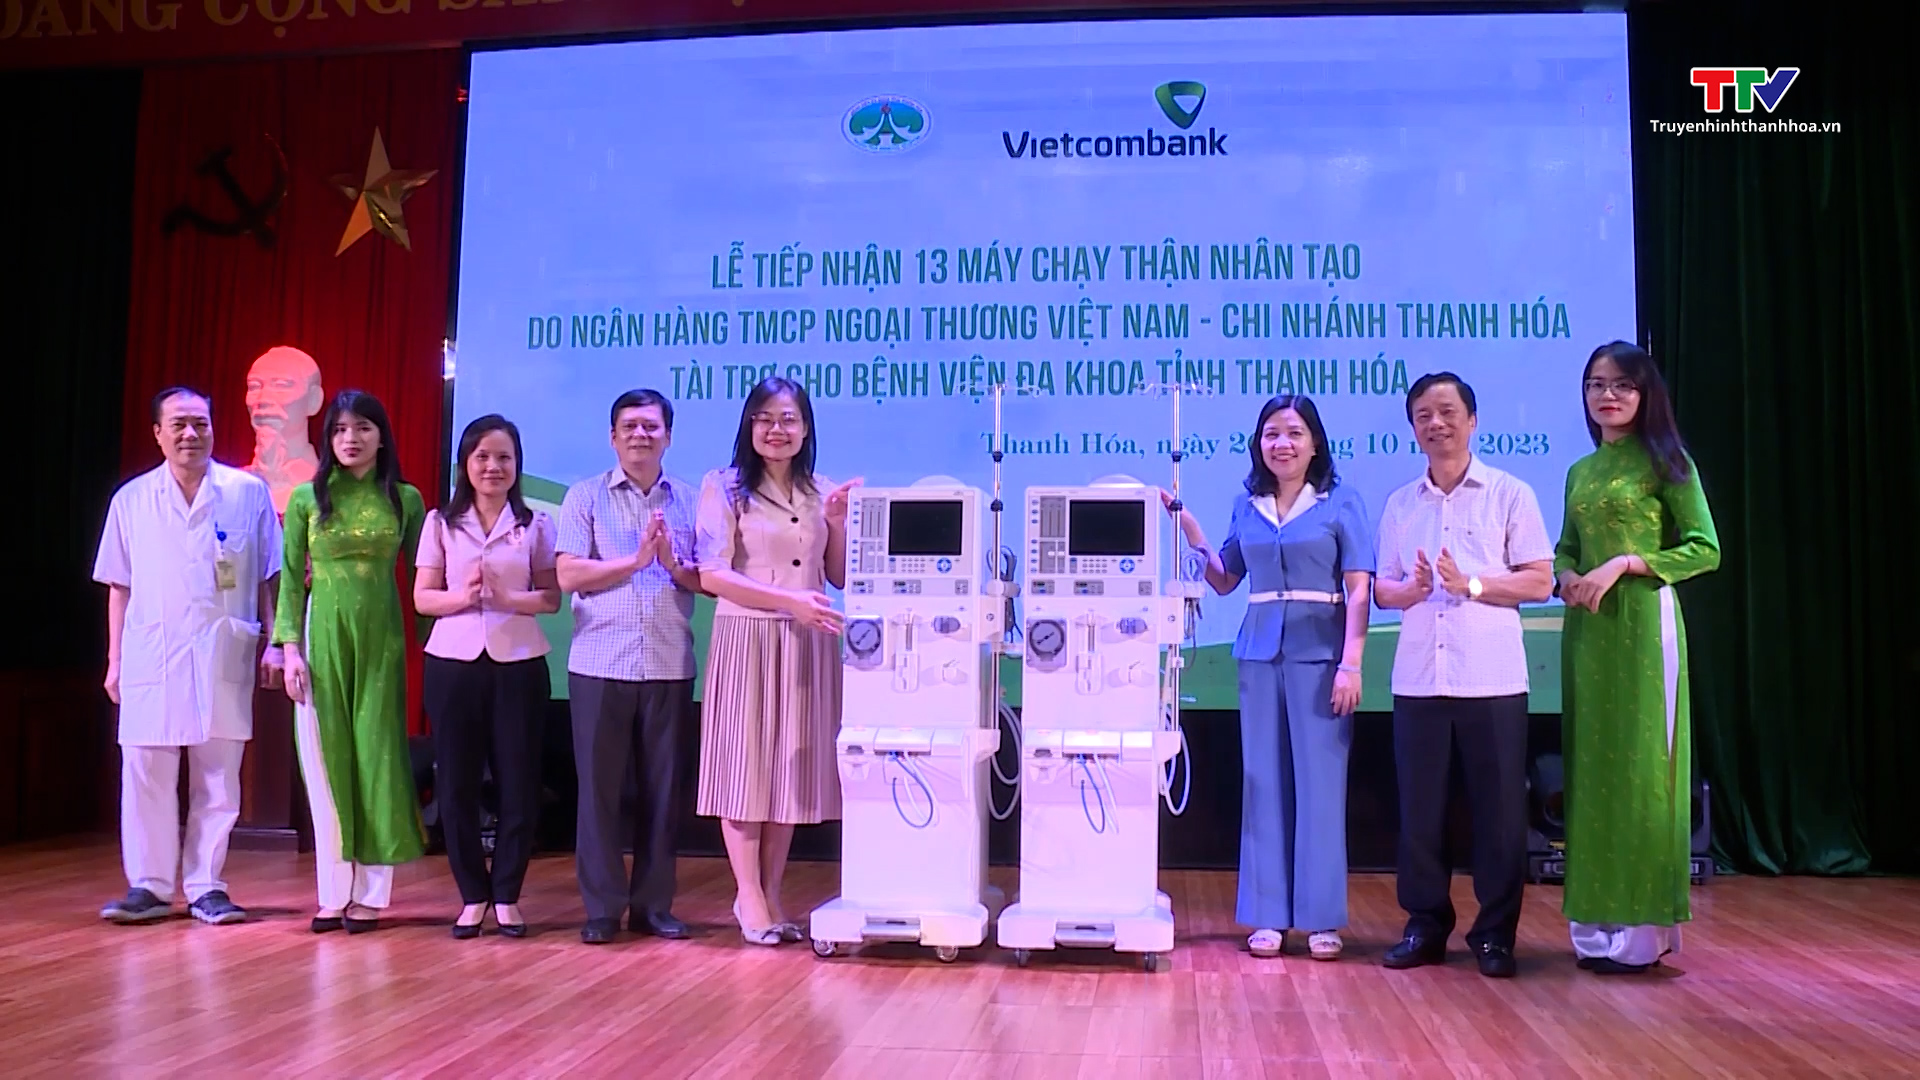 Bệnh viện Đa khoa tỉnh Thanh Hoá tiếp nhận 13 máy chạy thận nhân tạo - Ảnh 2.